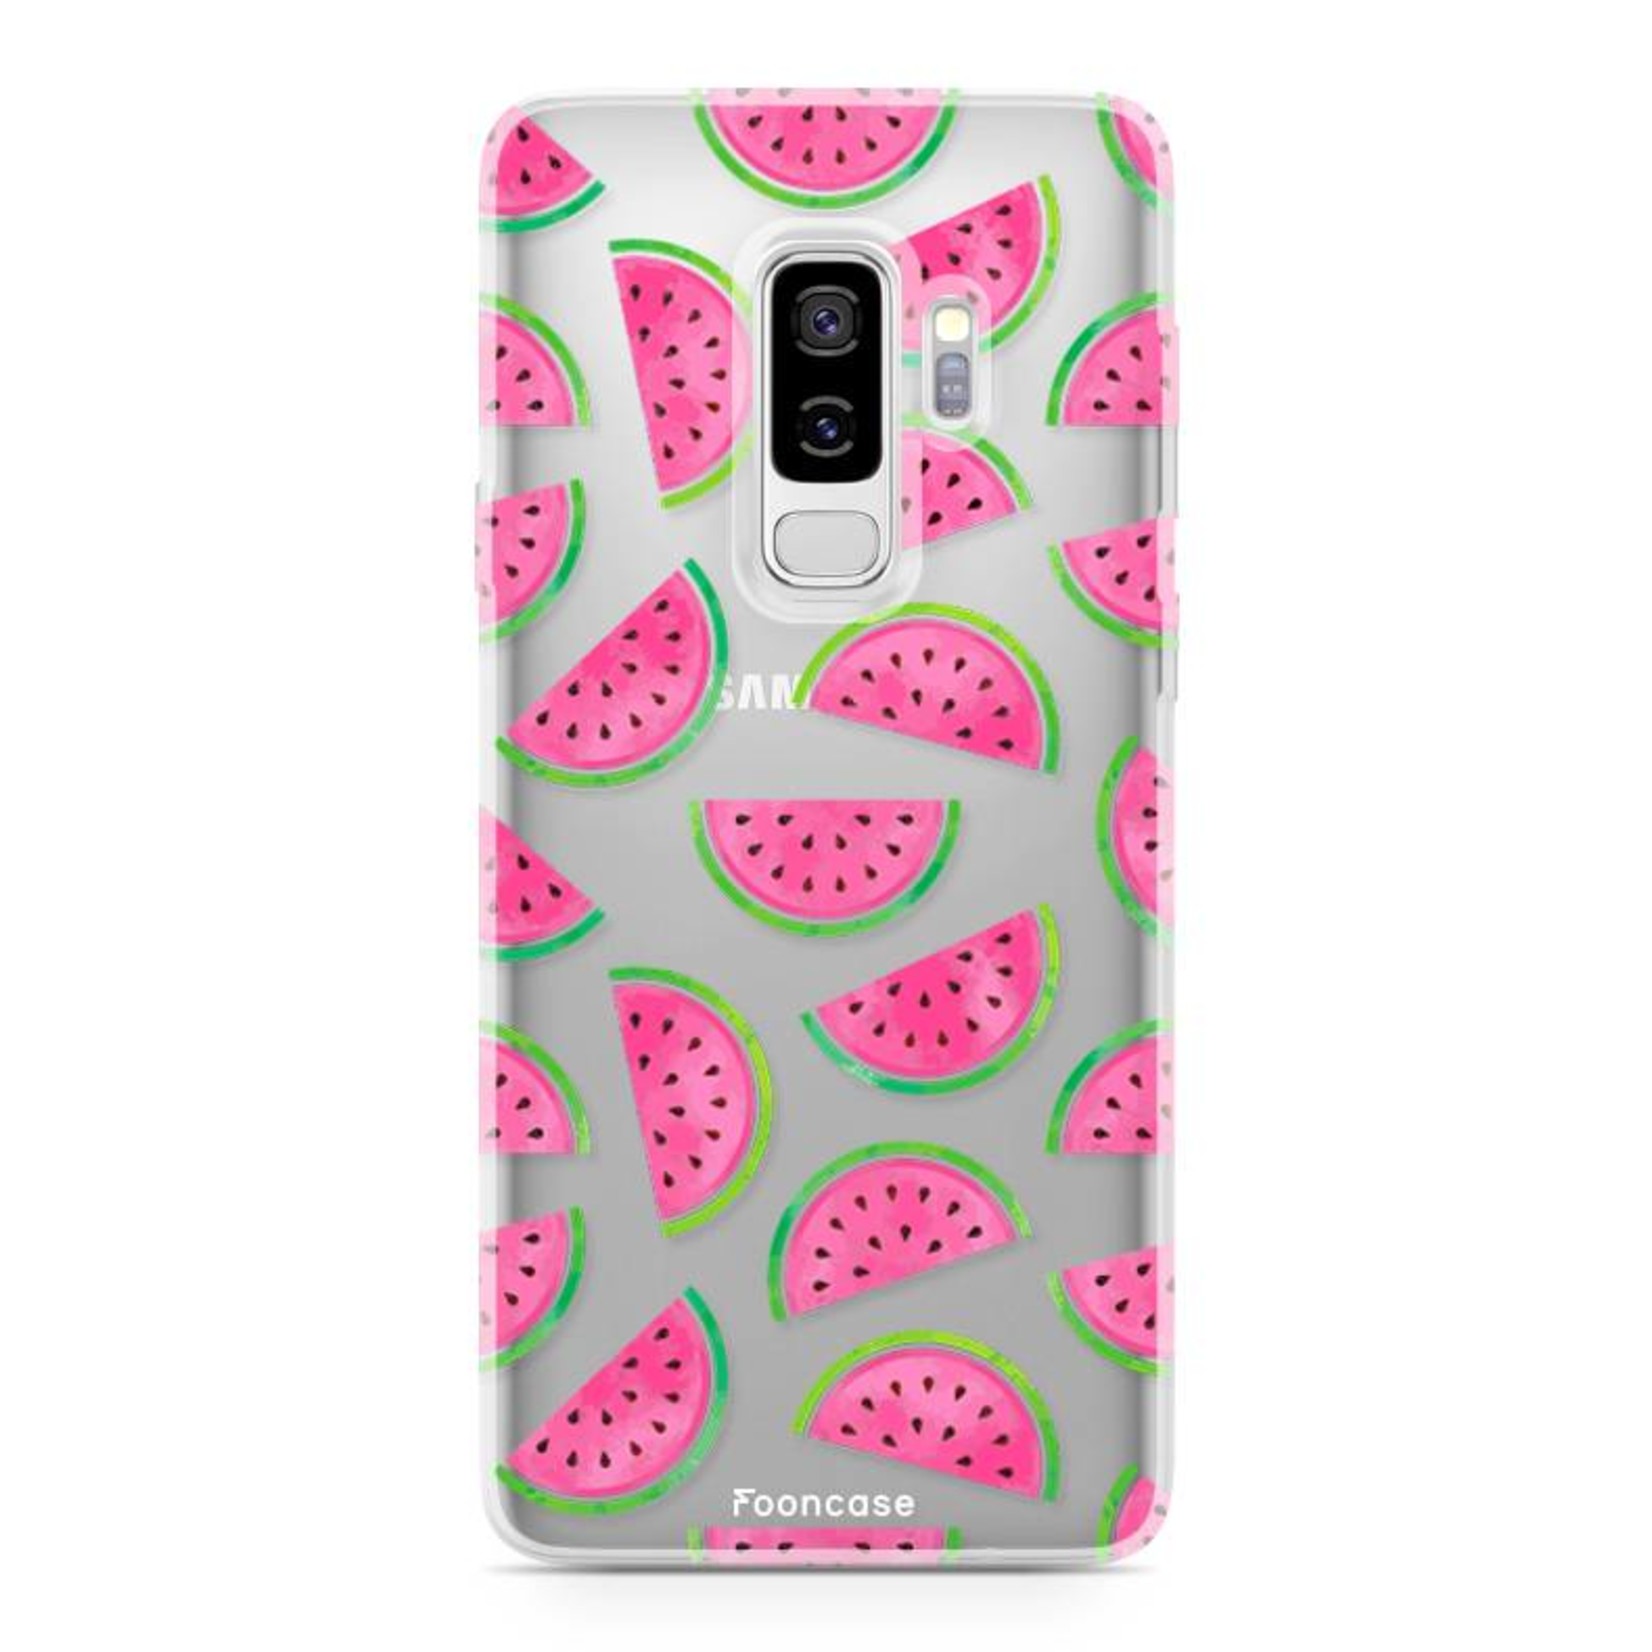 FOONCASE Samsung Galaxy S9 Plus hoesje TPU Soft Case - Back Cover - Watermeloen